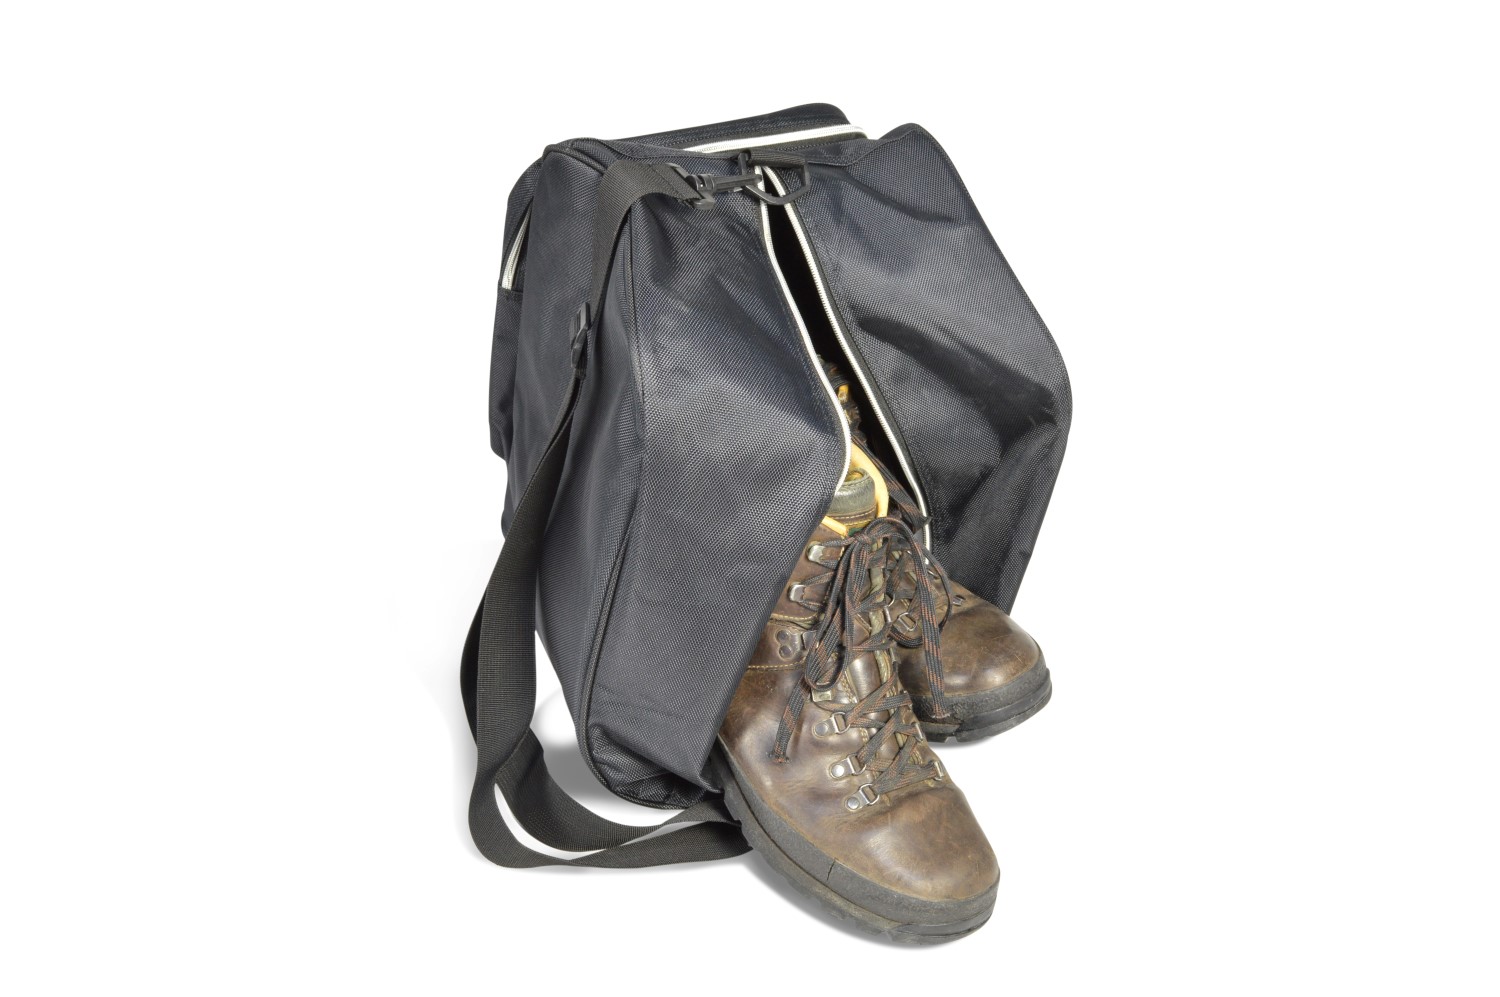 Boot Bag skischoenentas / wandelschoenentas